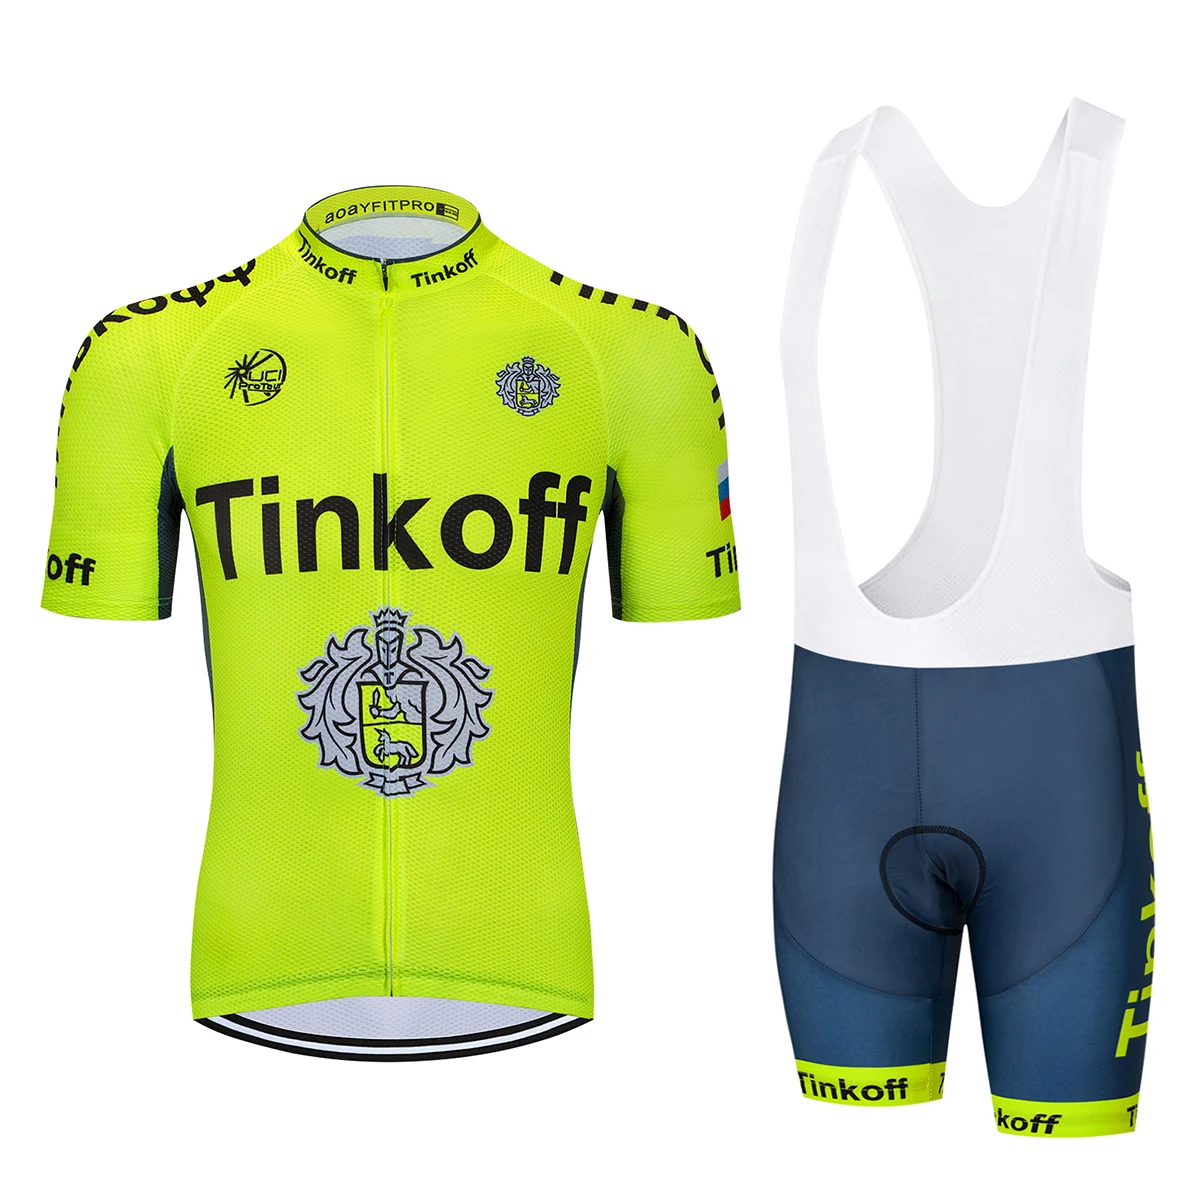 Прямые продажи с фабрики! SaxoBank Tinkoff велосипедная майка/быстросохнущая Ropa Ciclismo велосипедная одежда/дышащая велосипедная спортивная одежда